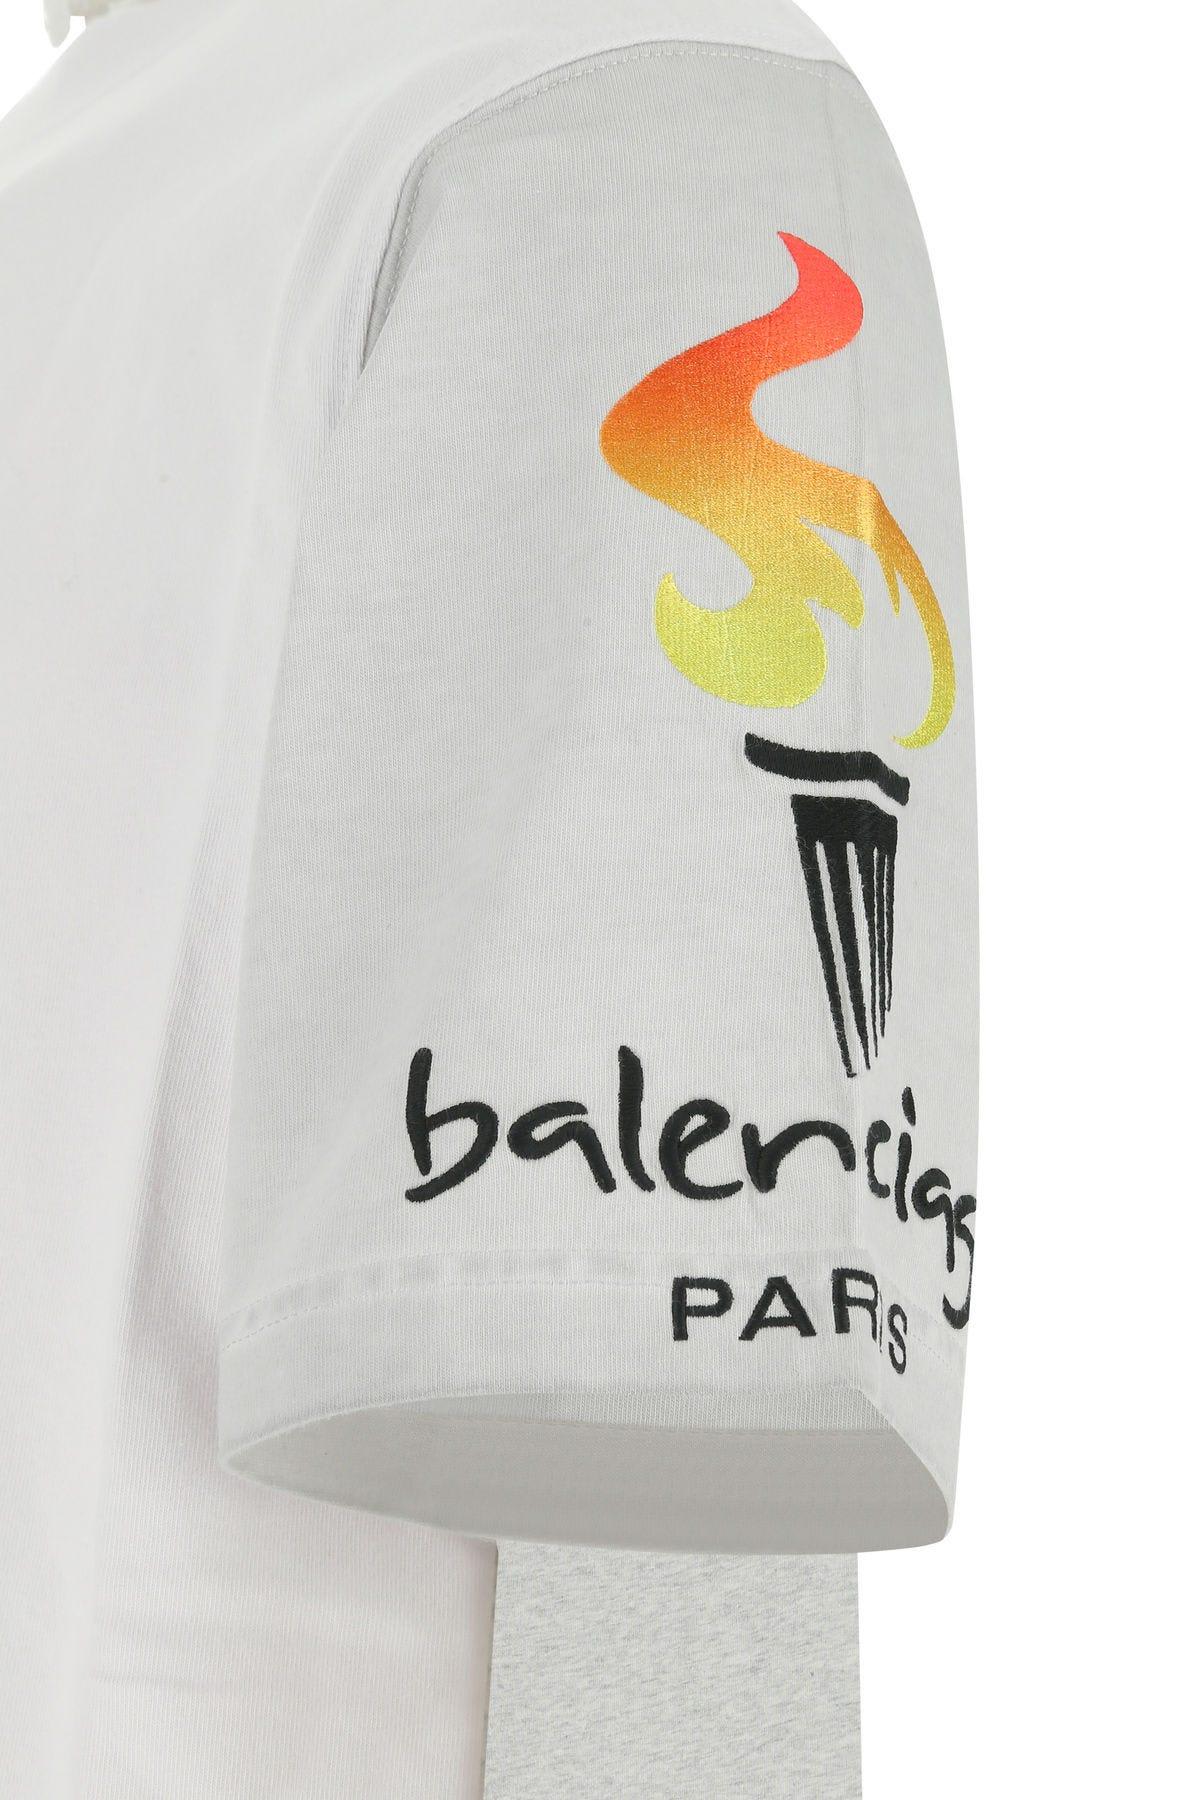 Balenciaga Interlock TShirt  CnExclusives